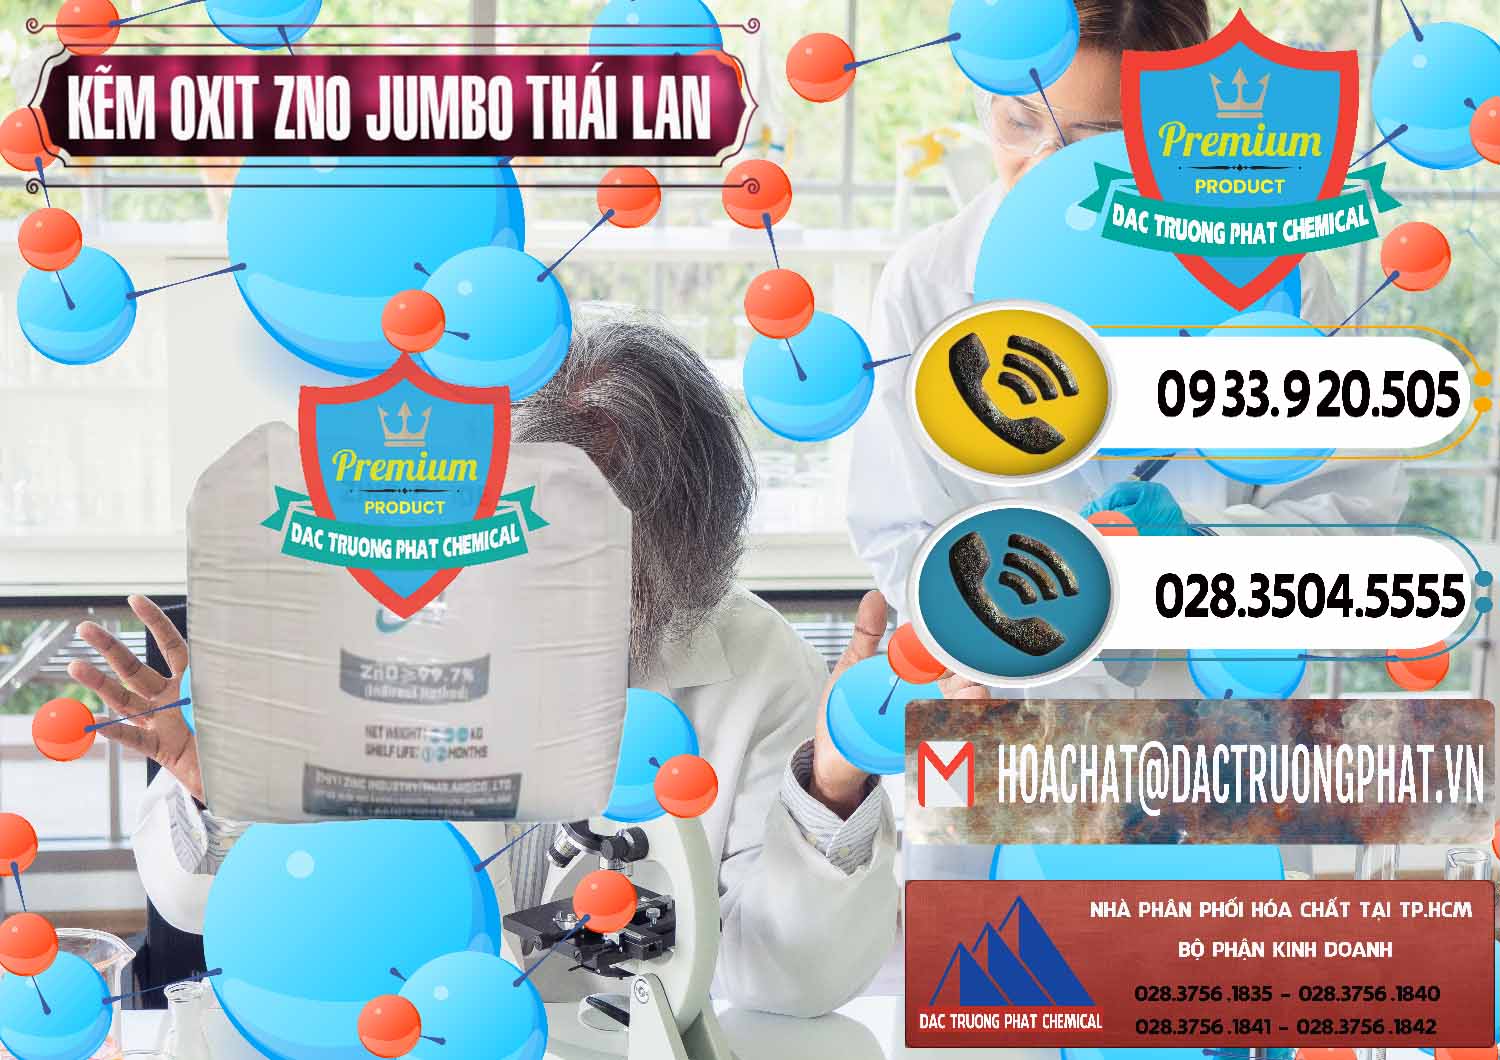 Chuyên cung cấp ( bán ) Zinc Oxide - Bột Kẽm Oxit ZNO Jumbo Bành Thái Lan Thailand - 0370 - Đơn vị chuyên cung cấp _ kinh doanh hóa chất tại TP.HCM - hoachatdetnhuom.vn